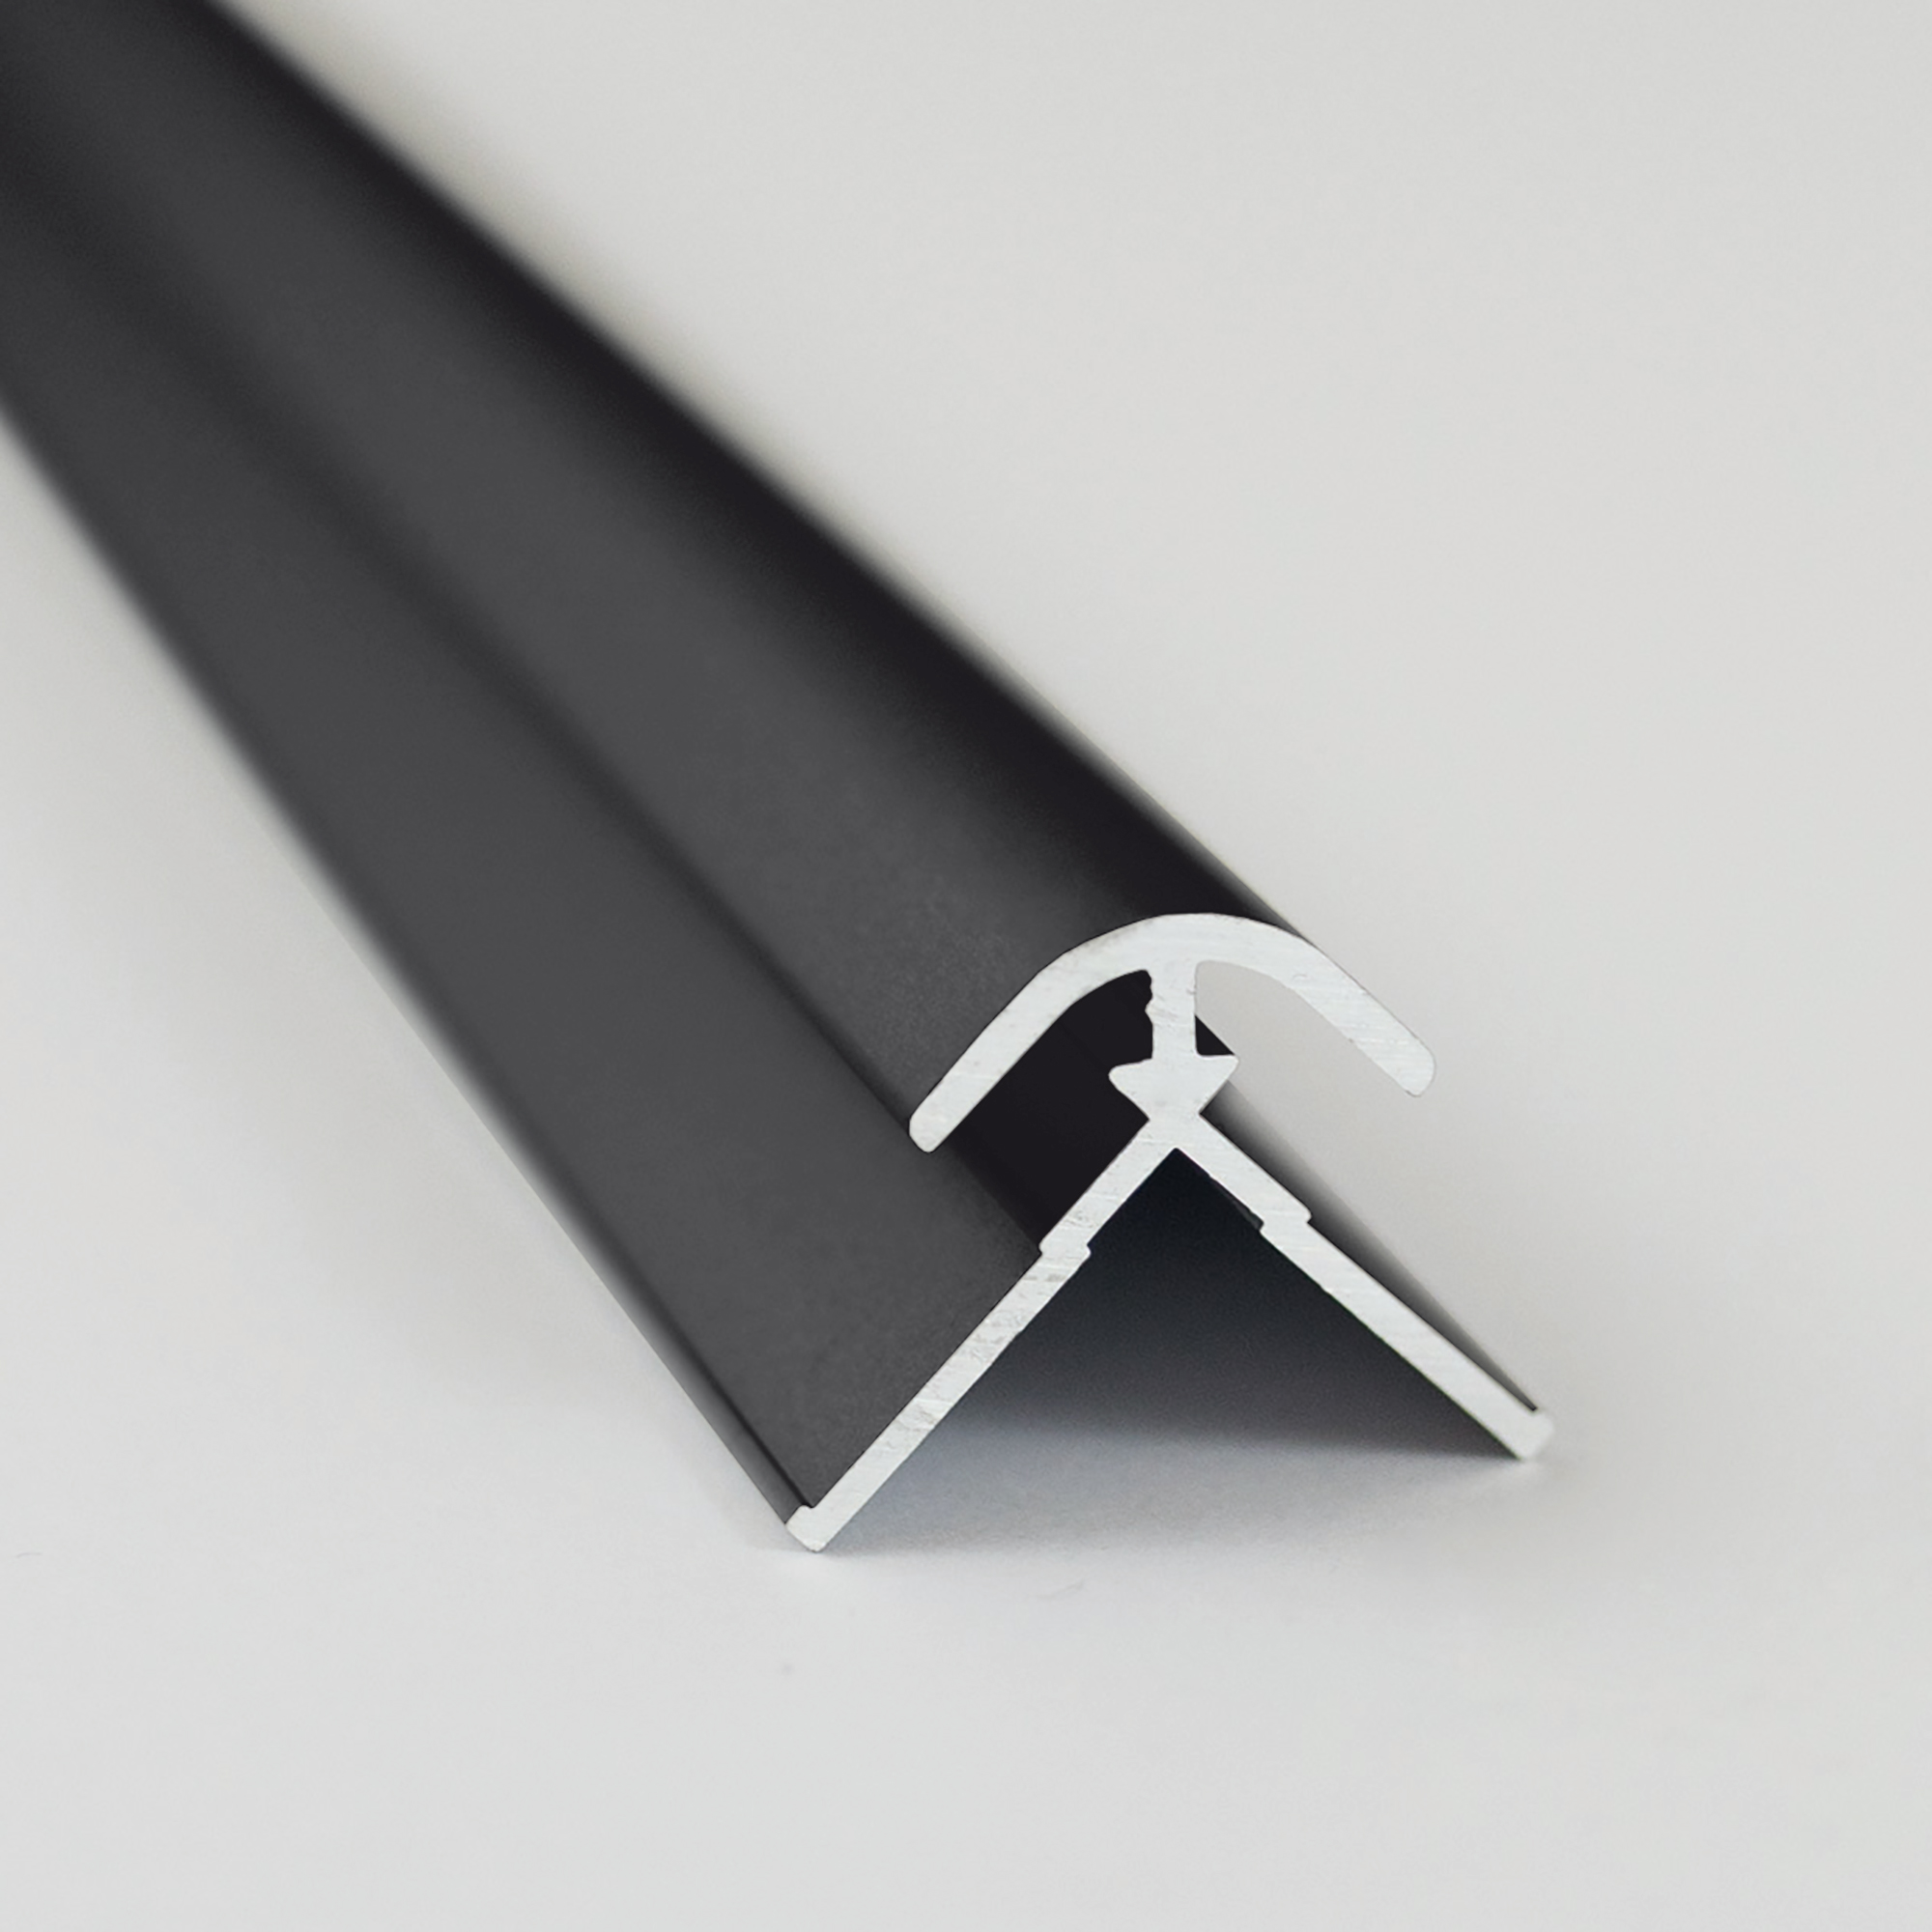 Verbindungsprofil für Rückwandplatten, Ecke außen, schwarz matt, 2550 mm + product picture